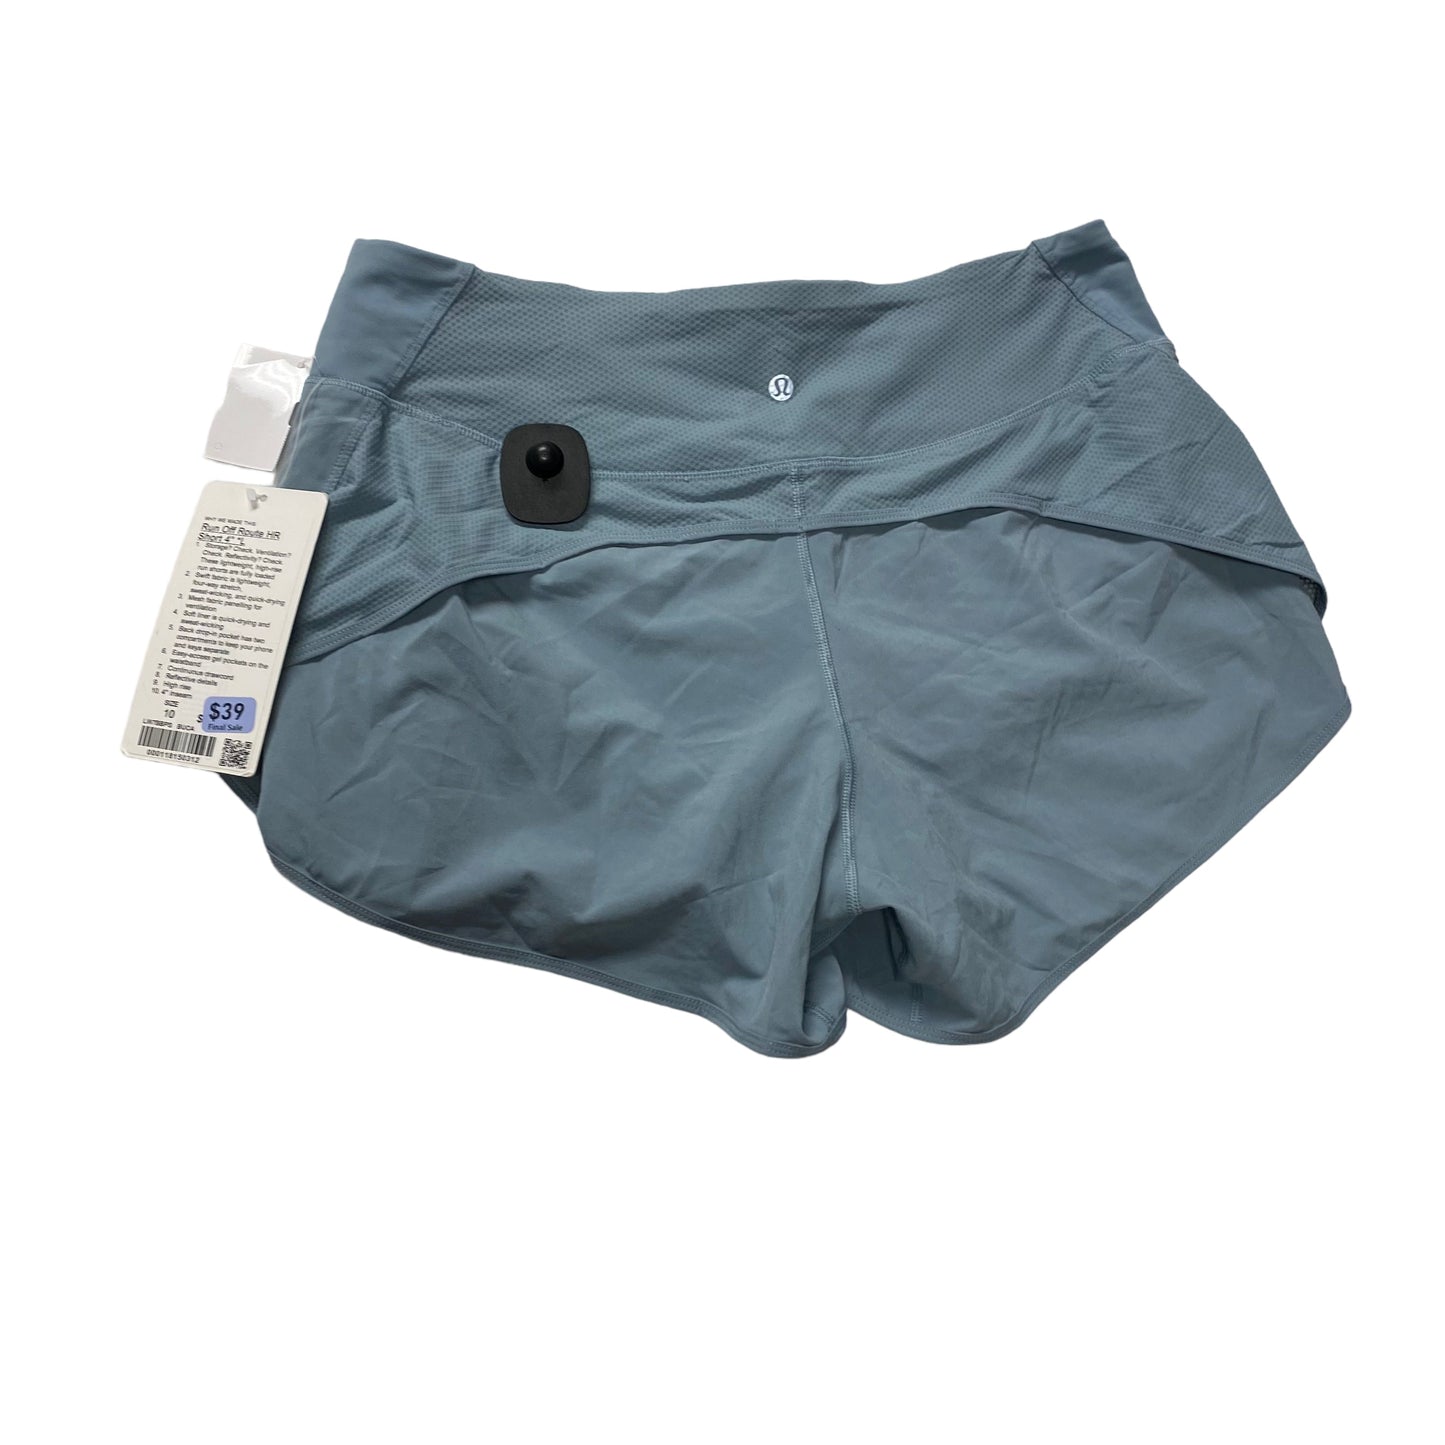 Blue Athletic Shorts Lululemon, Size 10